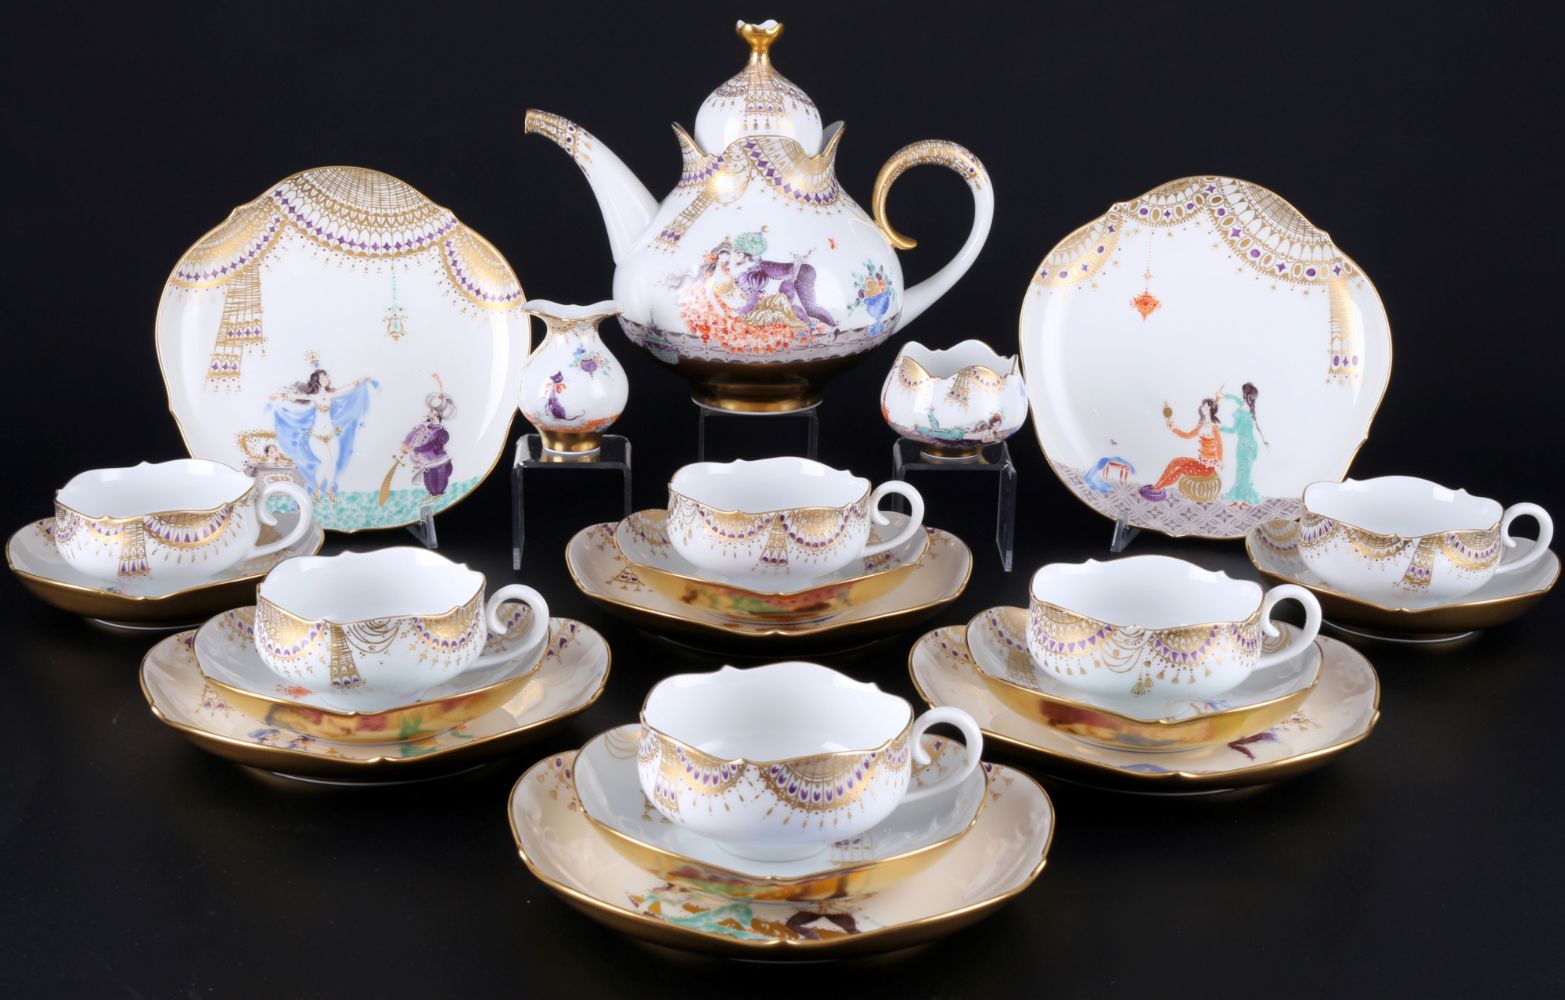 Porcelain, Asia, Art, Antiques, Collectibles - Auction